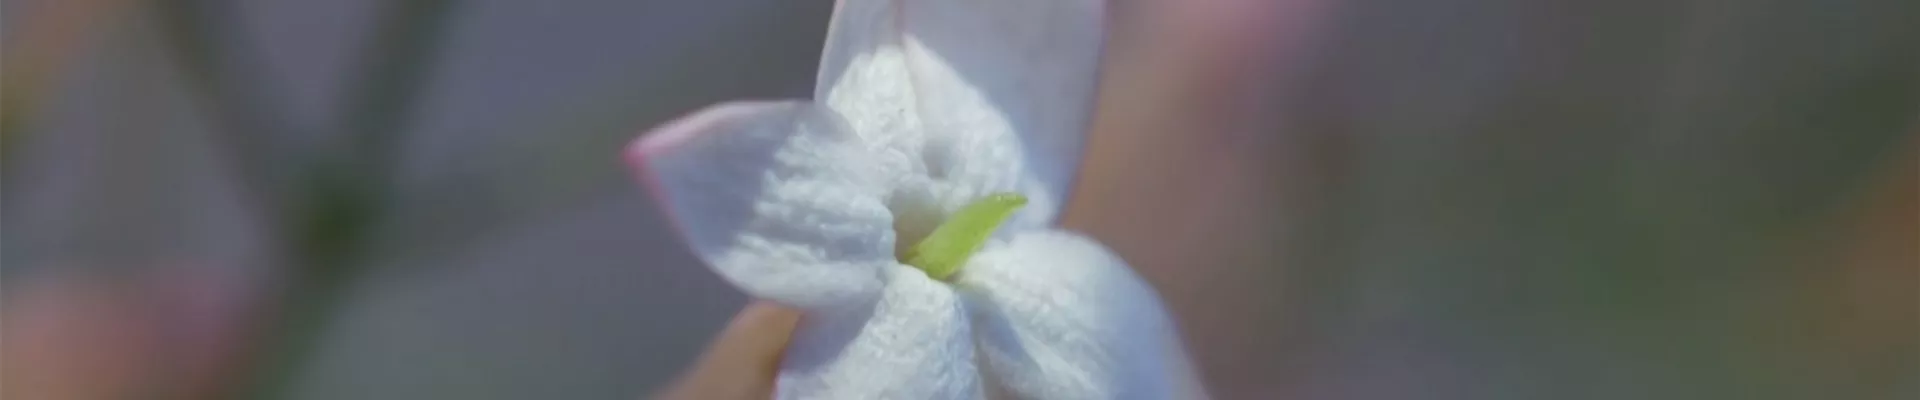 Zimmerjasmin - Einpflanzen in ein Gefäß (Thumbnail)